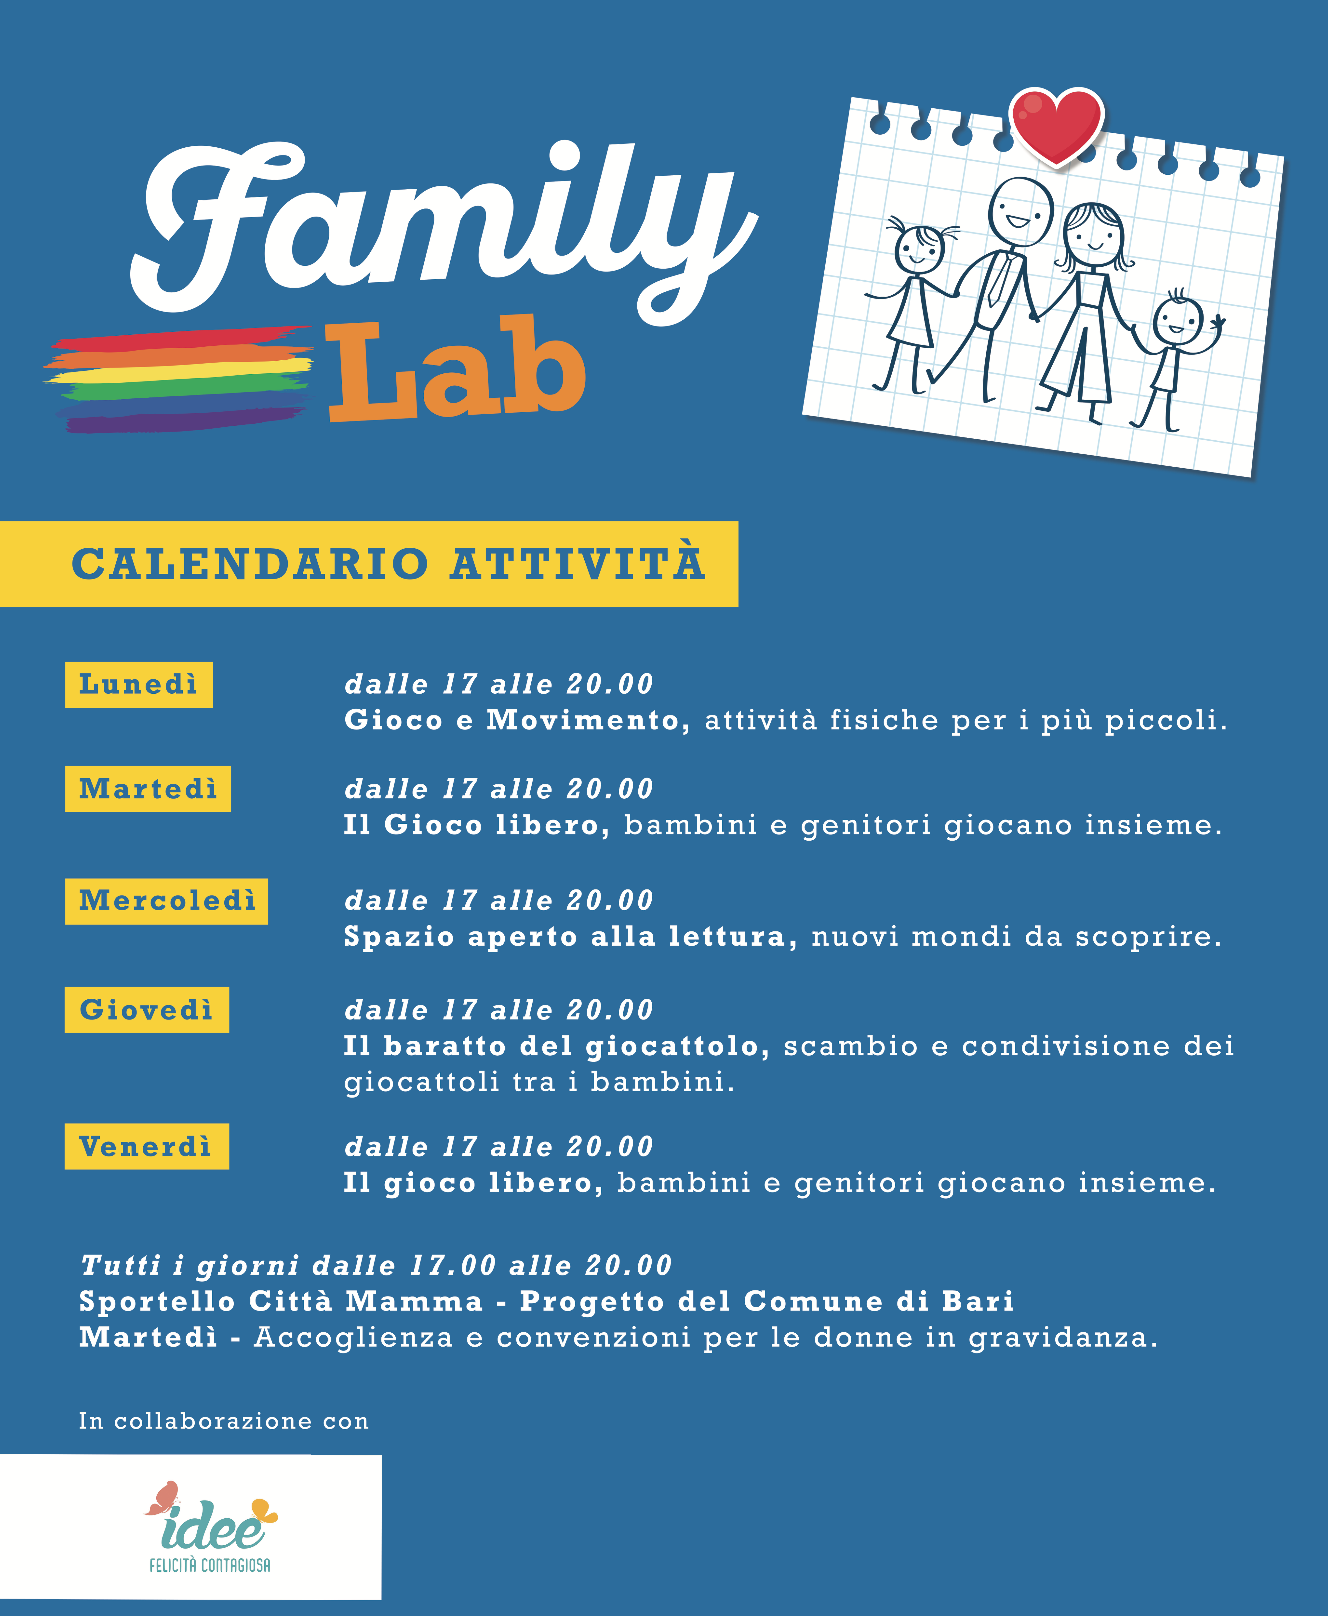 Family Lab - il calendario